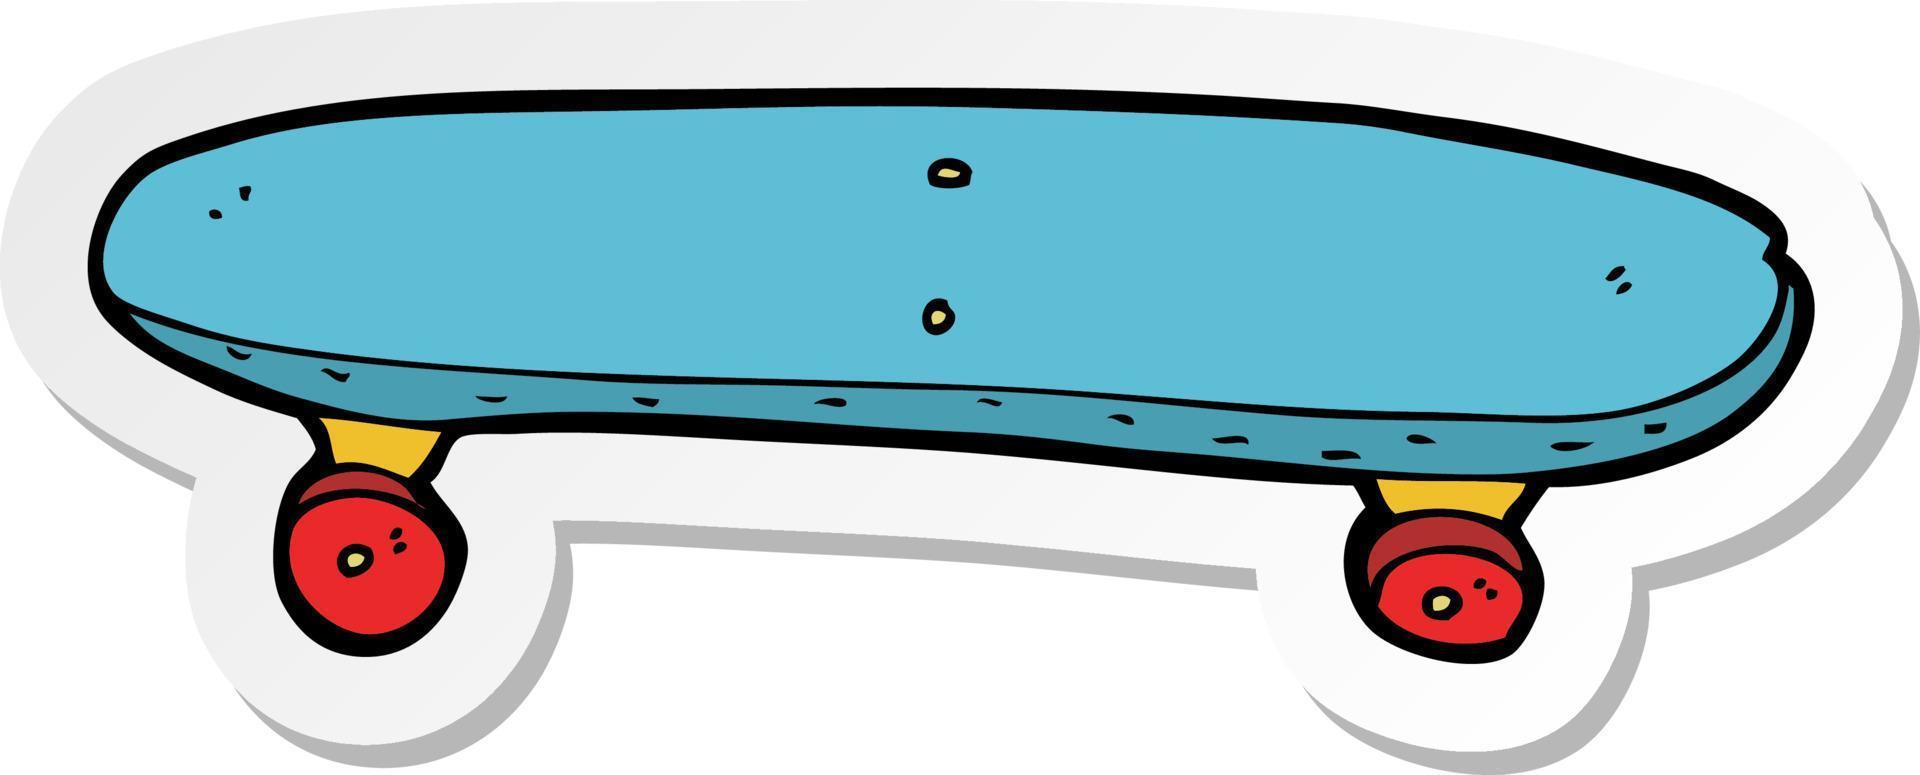 adesivo de um skate de desenho animado vetor